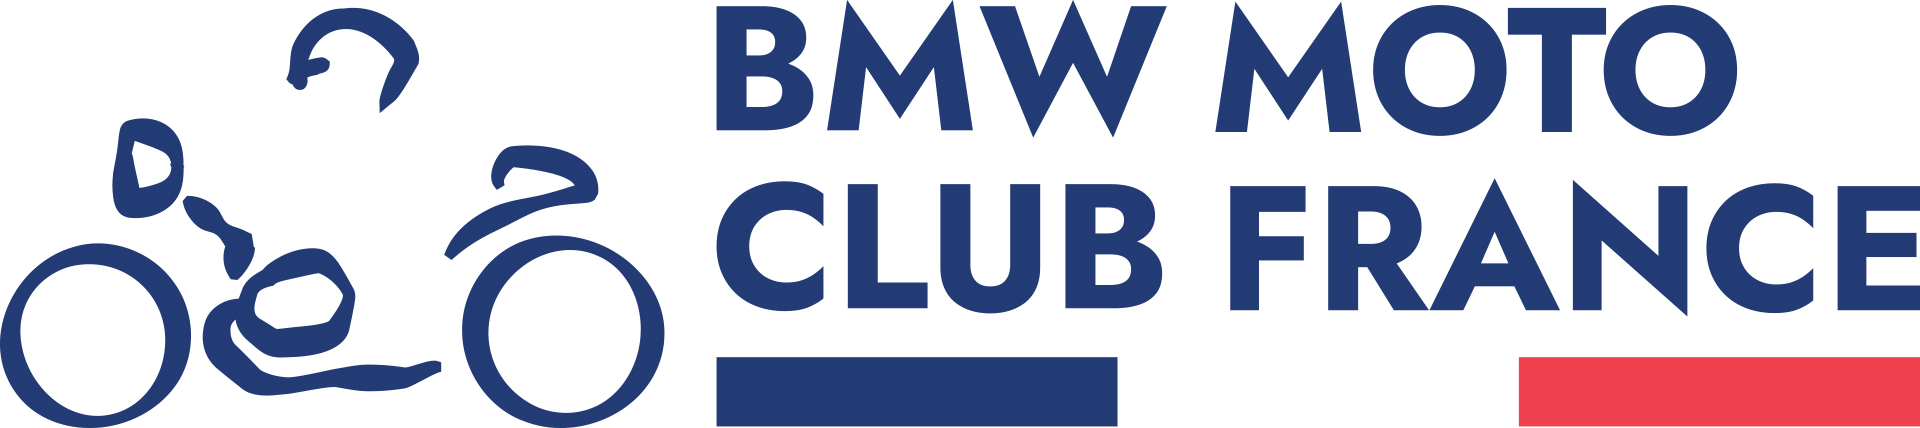 BMW Motorrad Club France